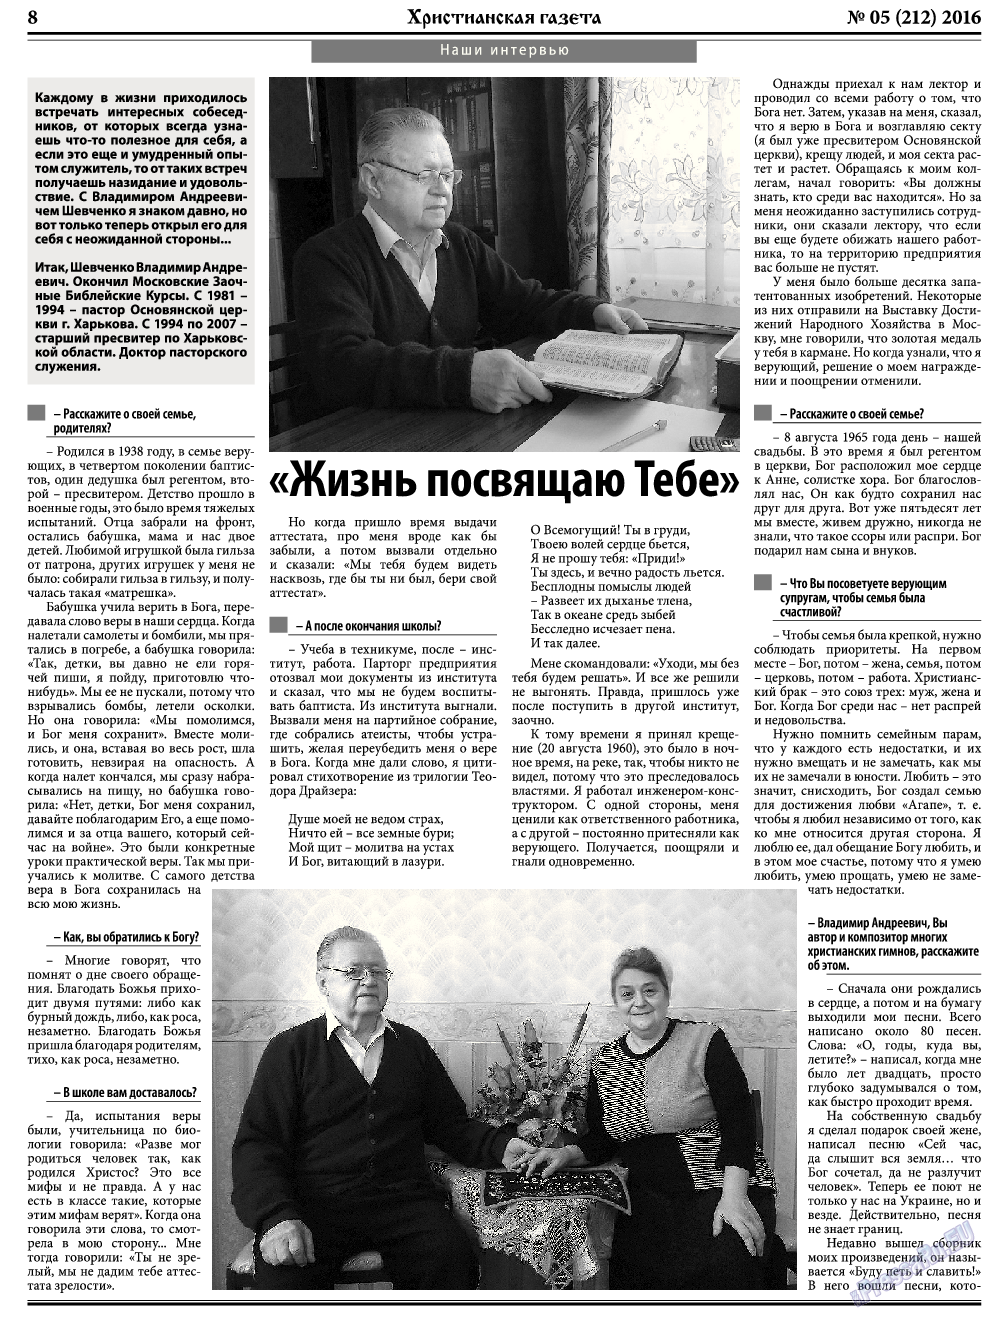 Христианская газета, газета. 2016 №5 стр.8